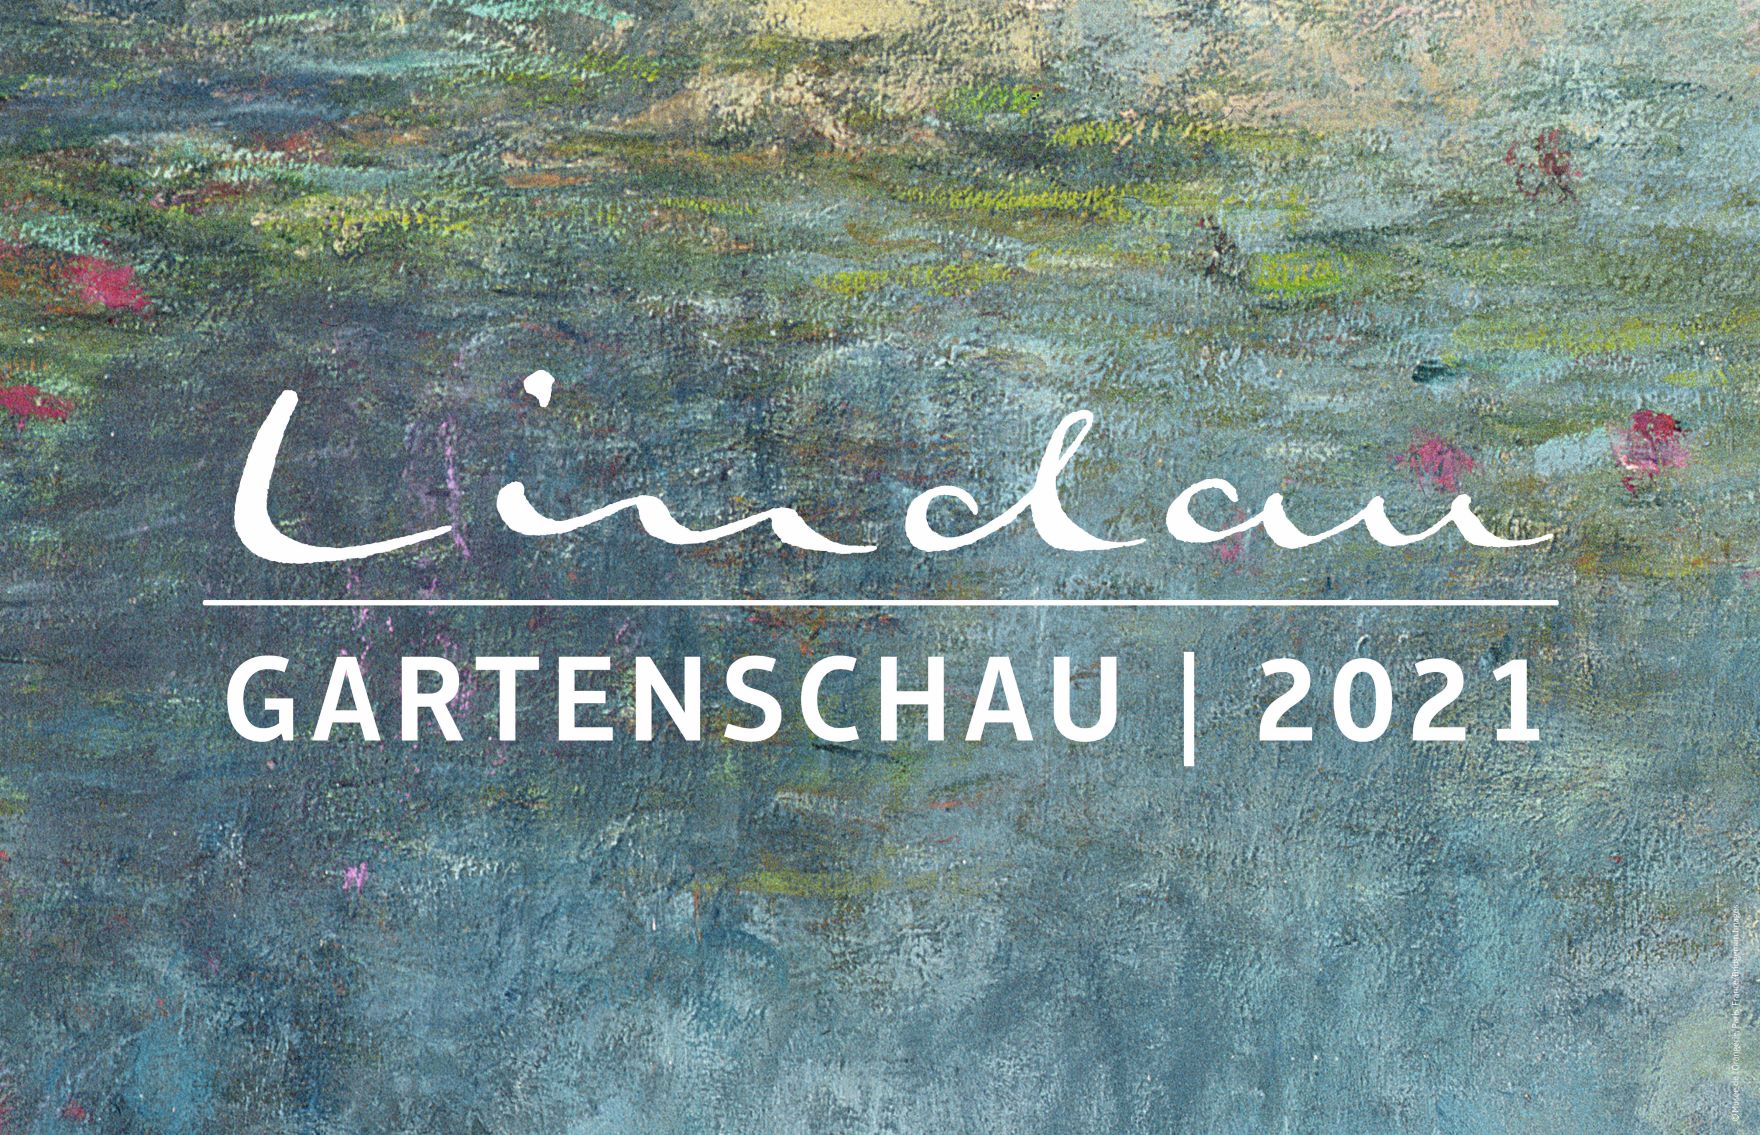 Gartenschau_Logo_1.jpg